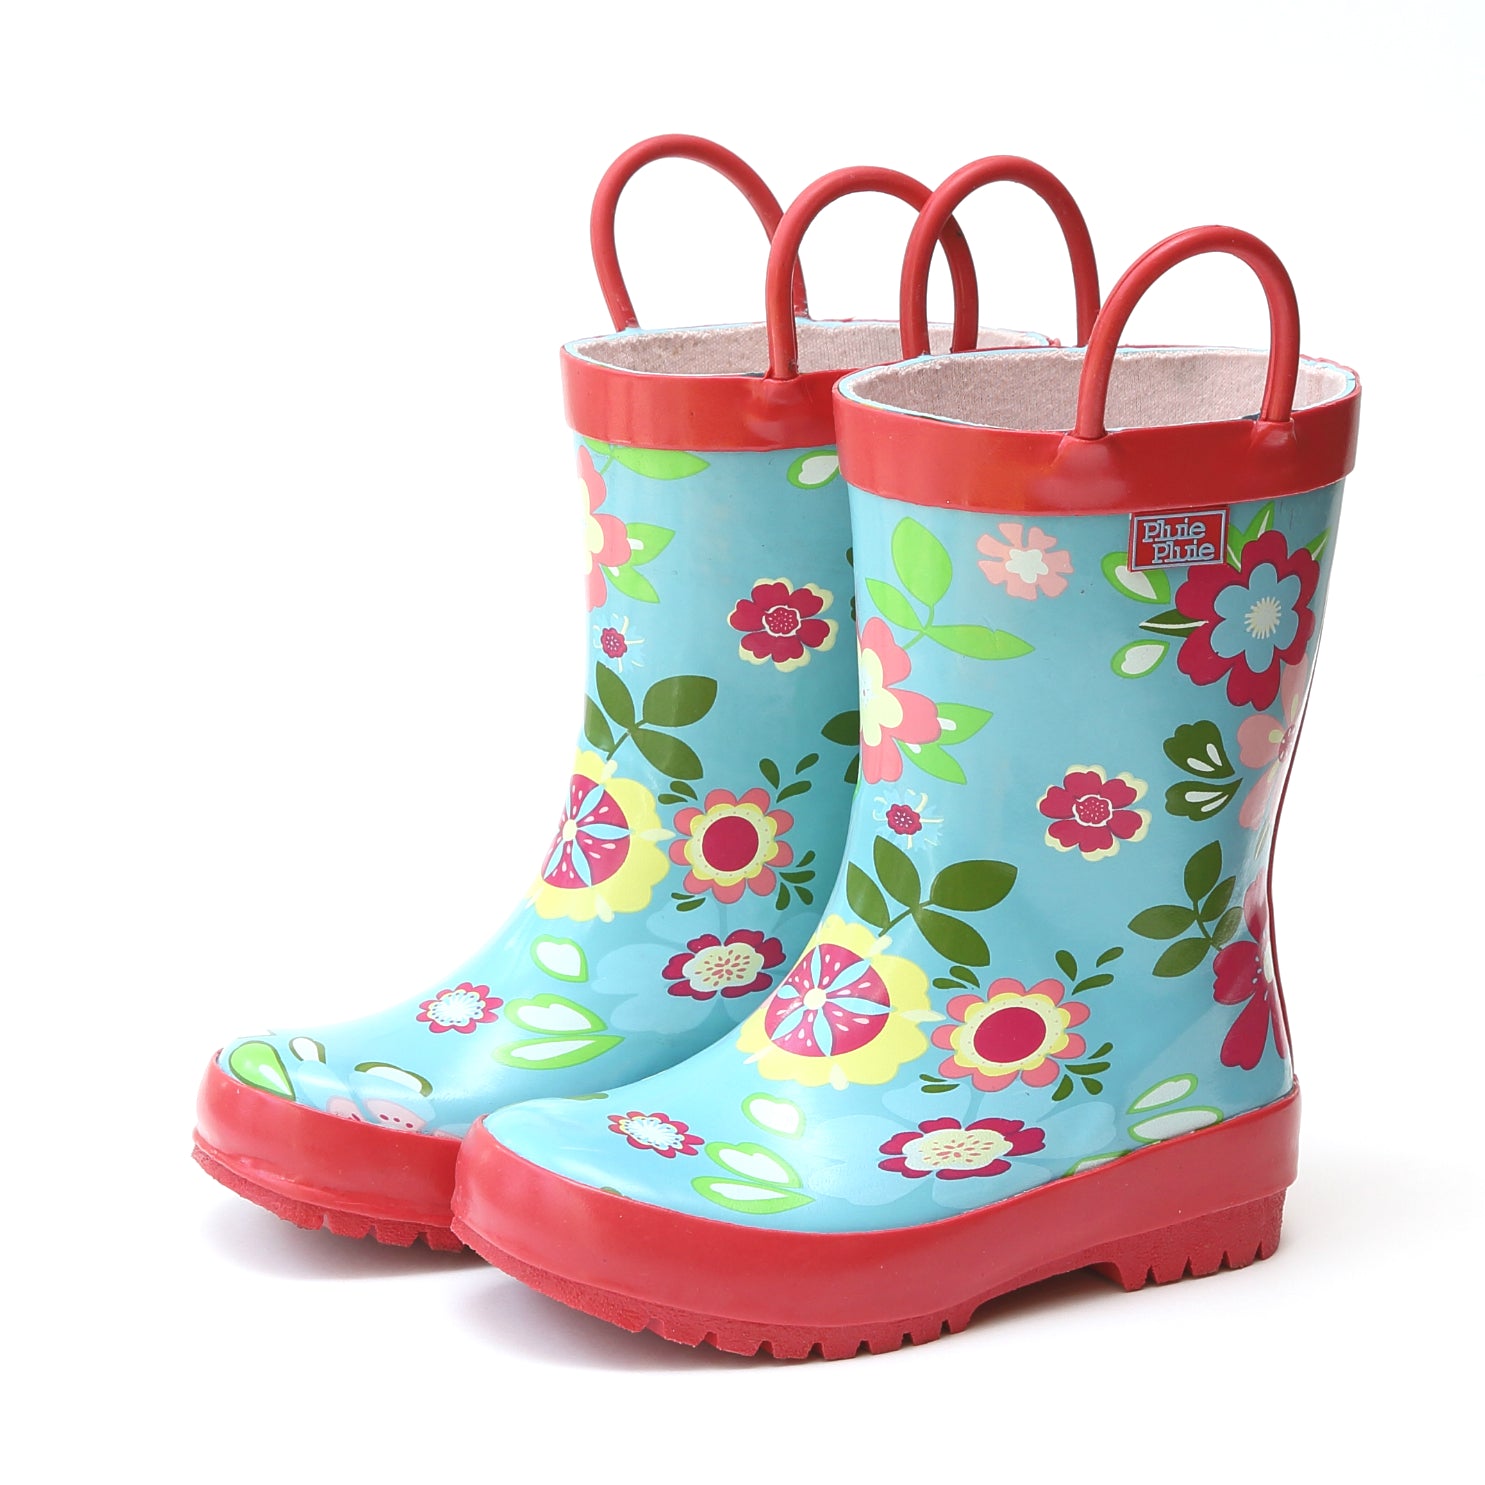 floral rain boot